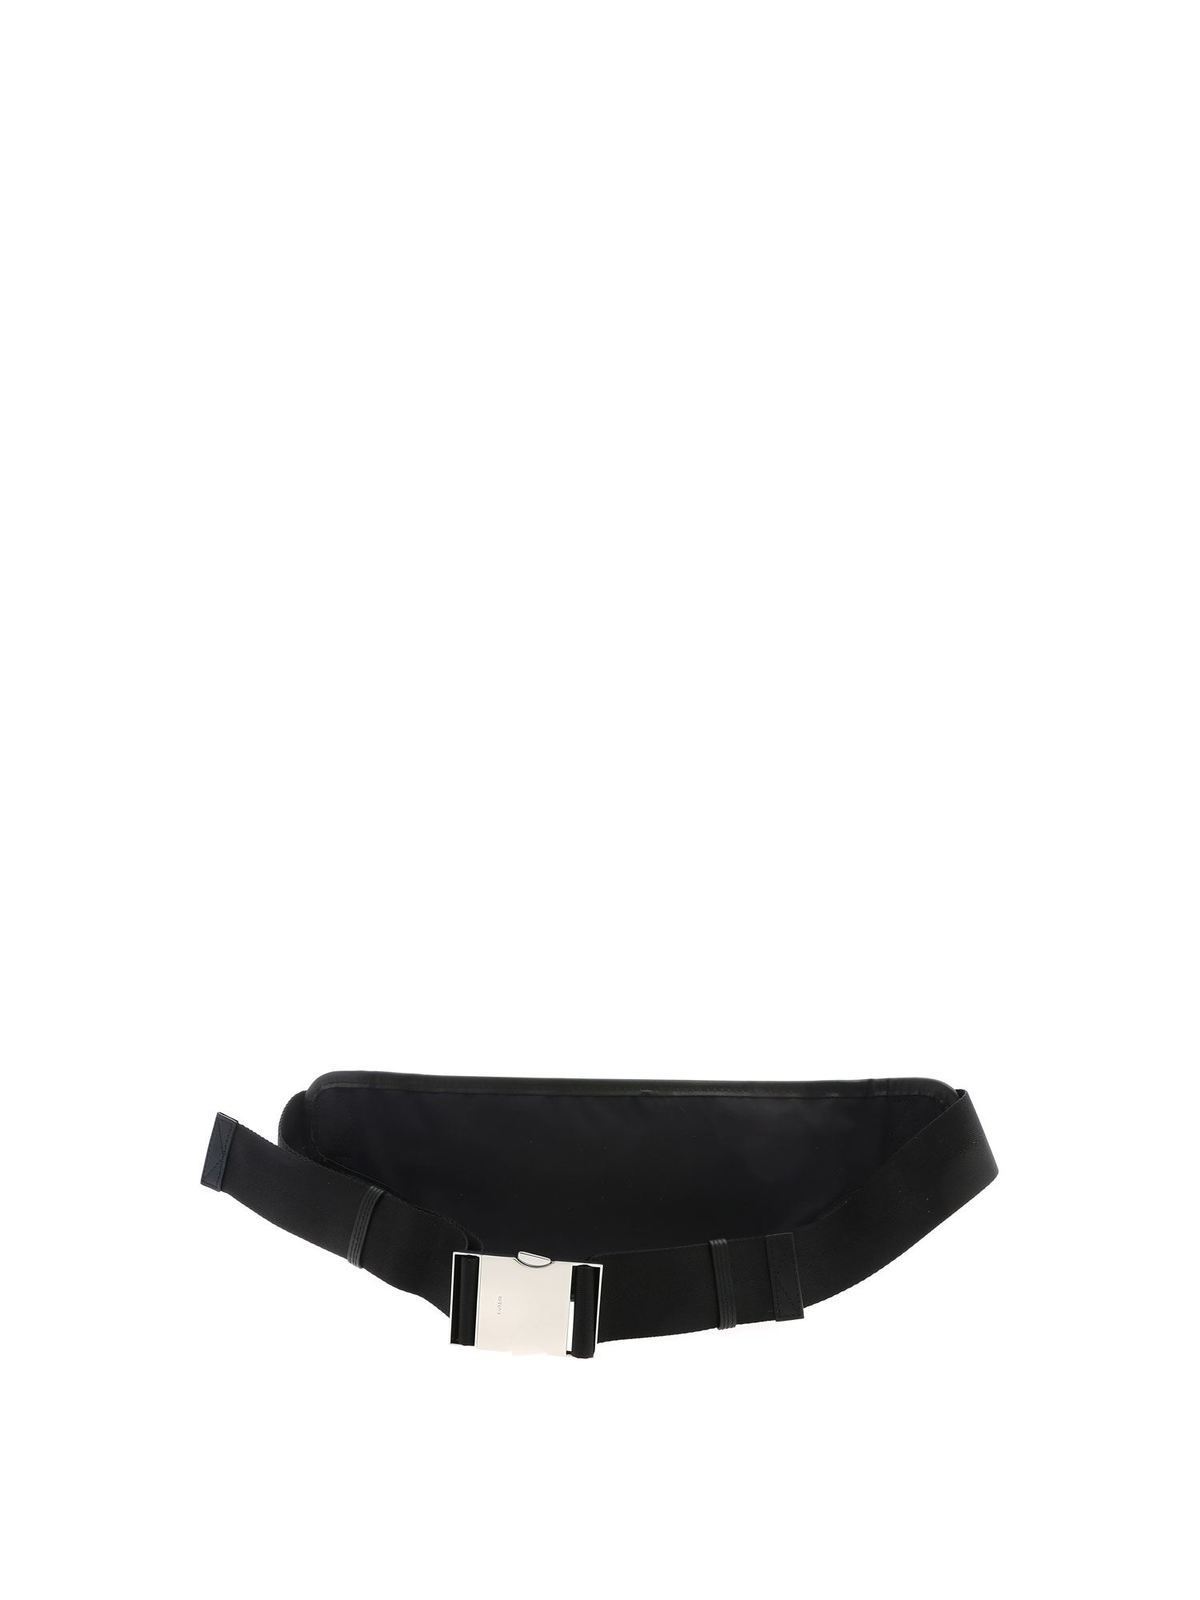 Sitcom inhoud slijtage Belt bags Kenzo - Multicolor logo Kenzo Paris belt bag in black -  5SF212F2699